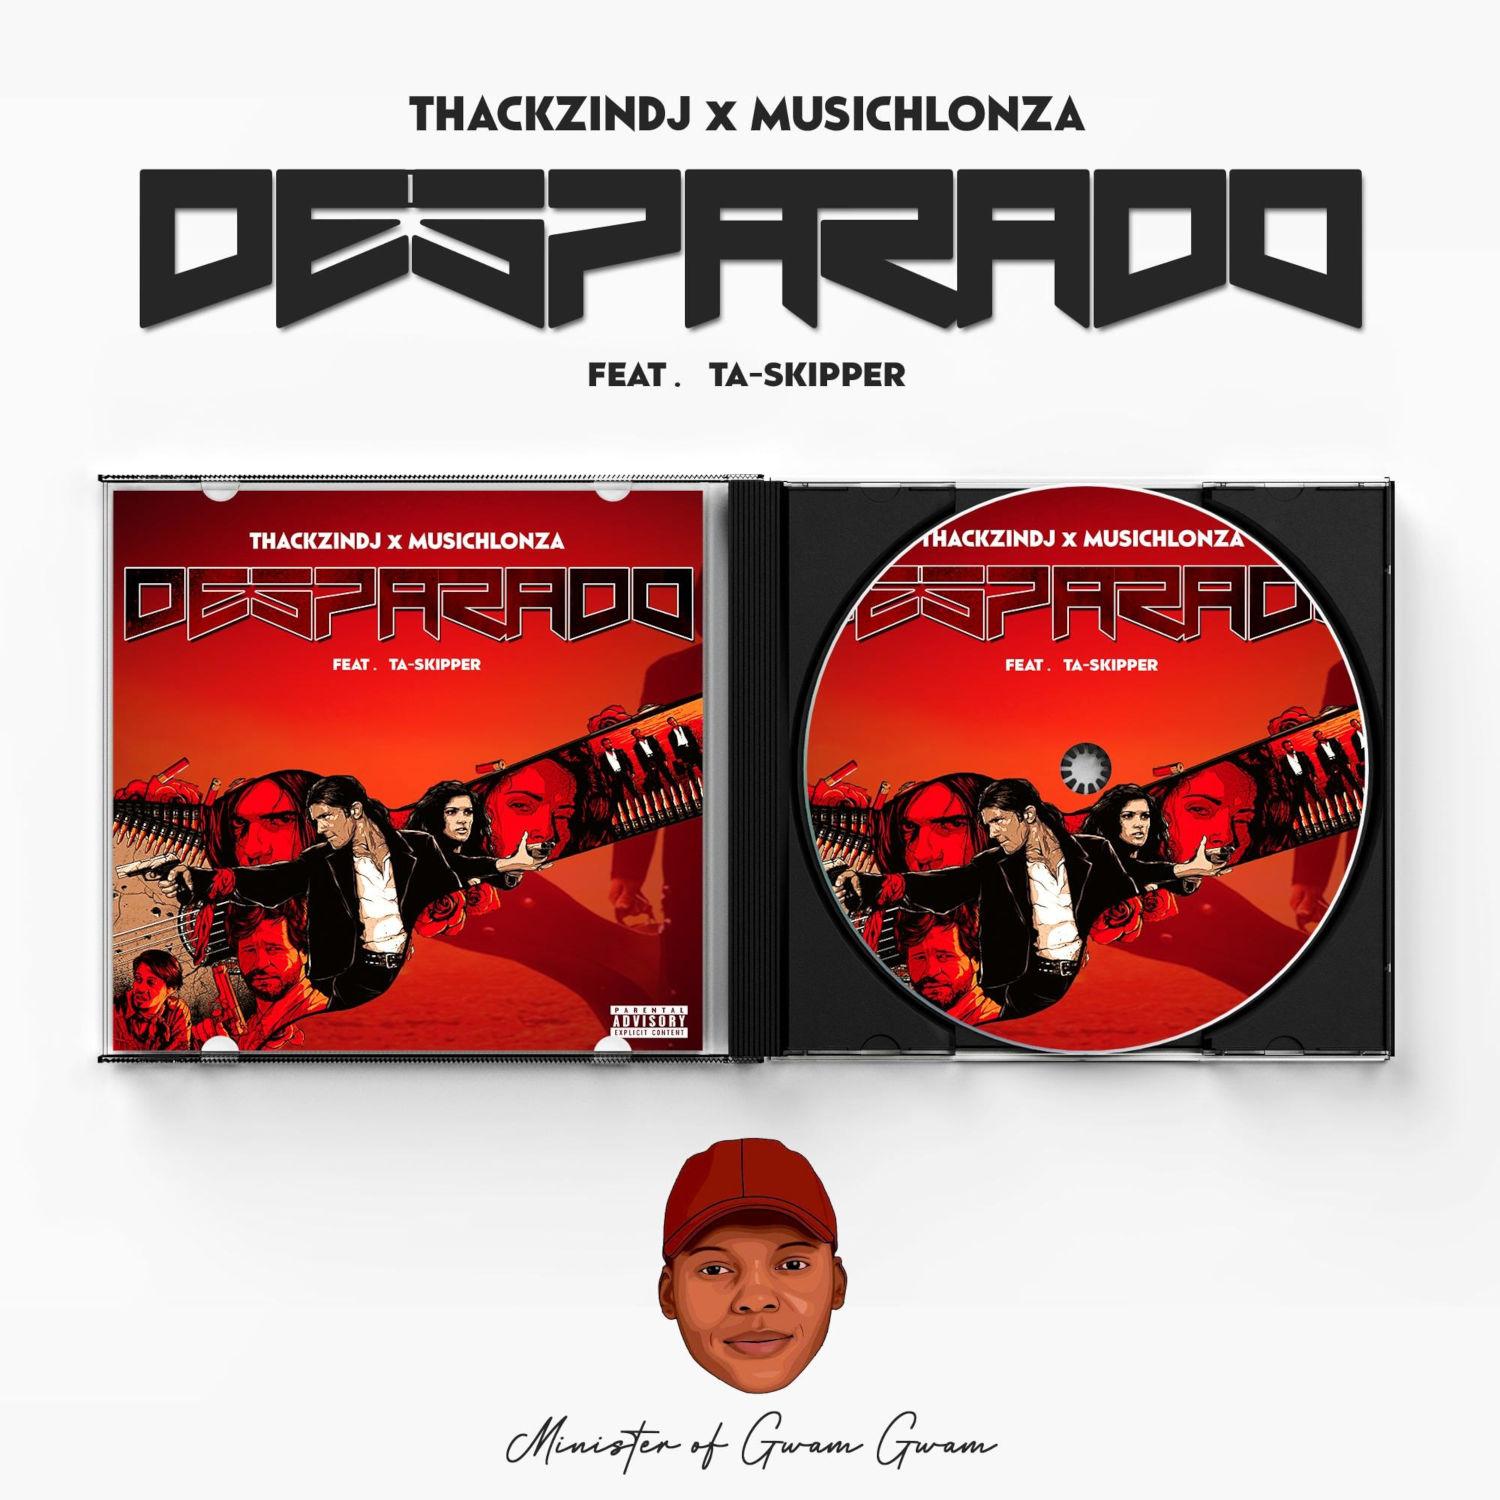 ThackzinDJ x Musichlonza - Desparado (feat. TaSkipper)